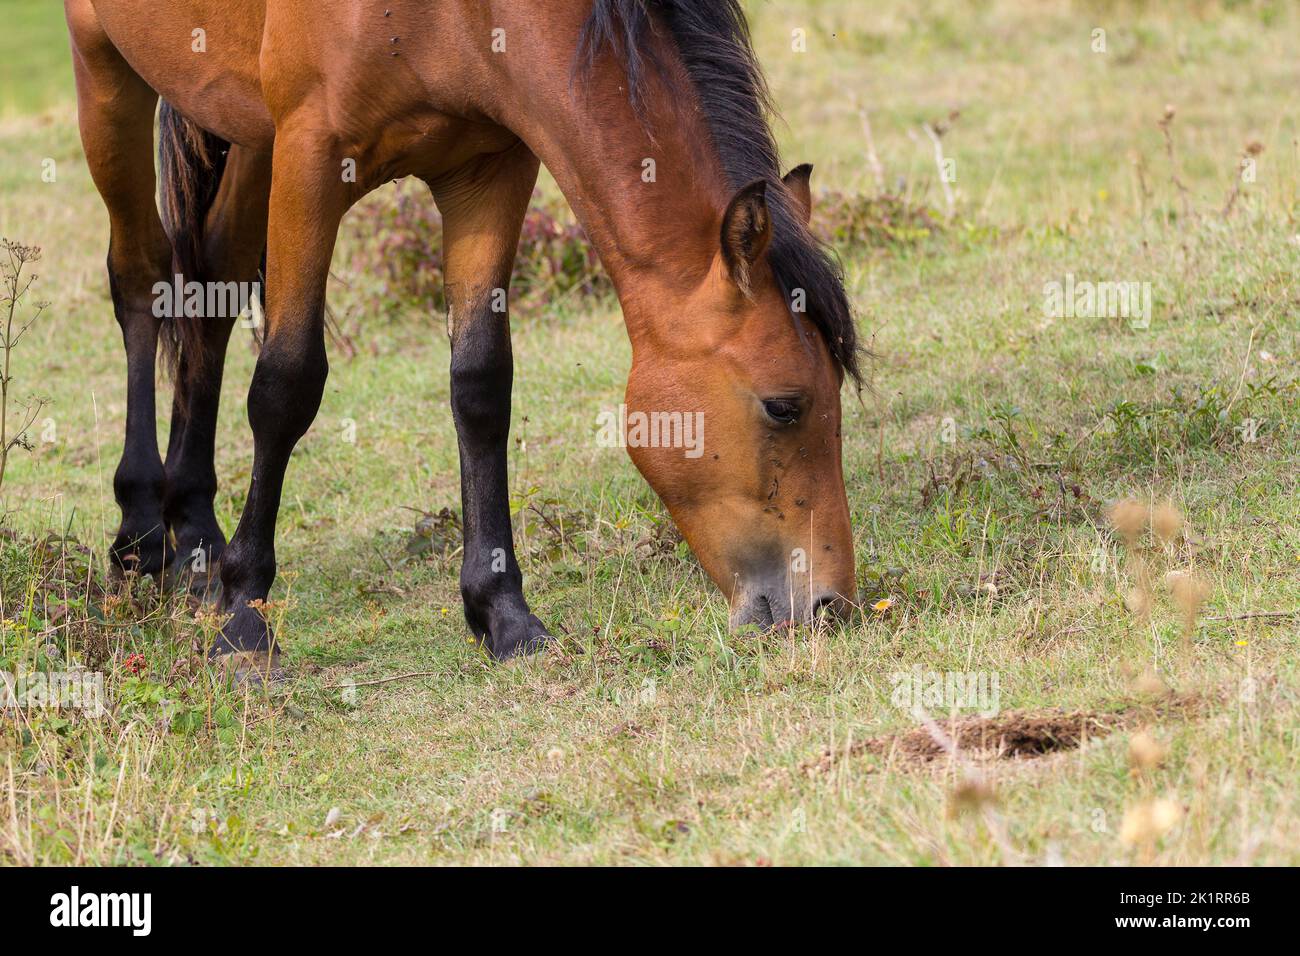 Wildes Newforest Pony grast am Cissbury Ring southdowns findon UK, eingeführt für die Beweidung und Rodung scheuerndes braunes Fell, dunkler Mähne Schwanz und Unterschenkel Stockfoto